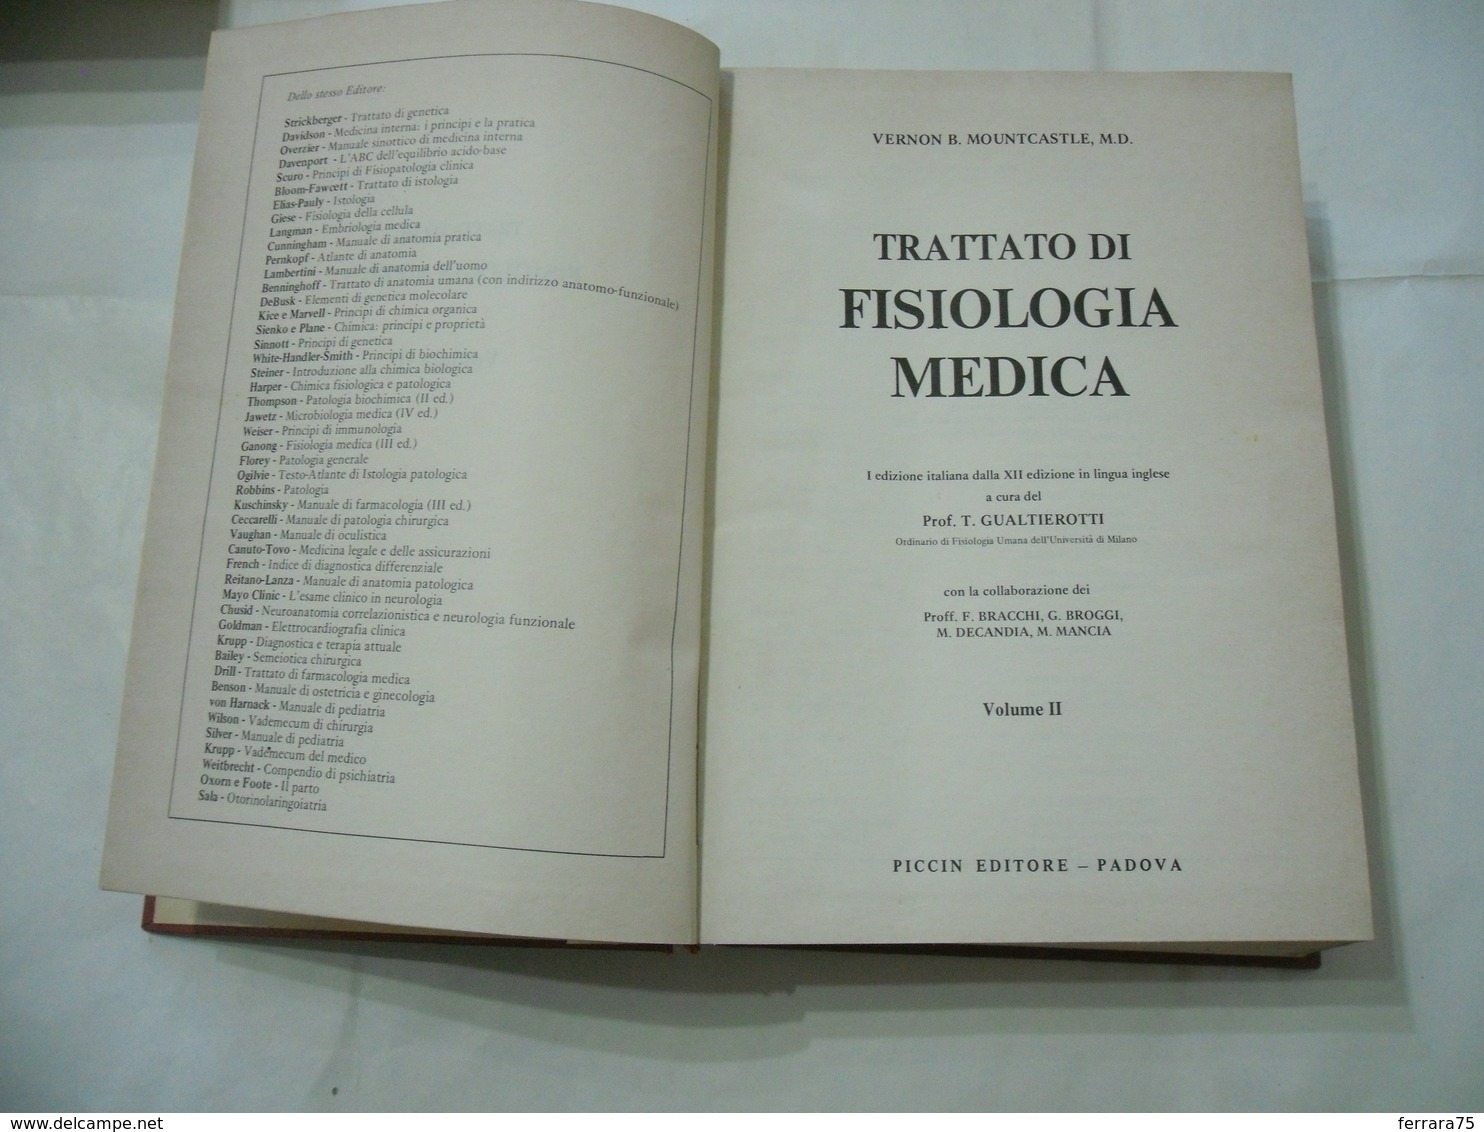 Trattato Di Fisiologia Medica Vol. II Piccin Mountcastle Vernon B. Medicina - Medicina, Biologia, Chimica